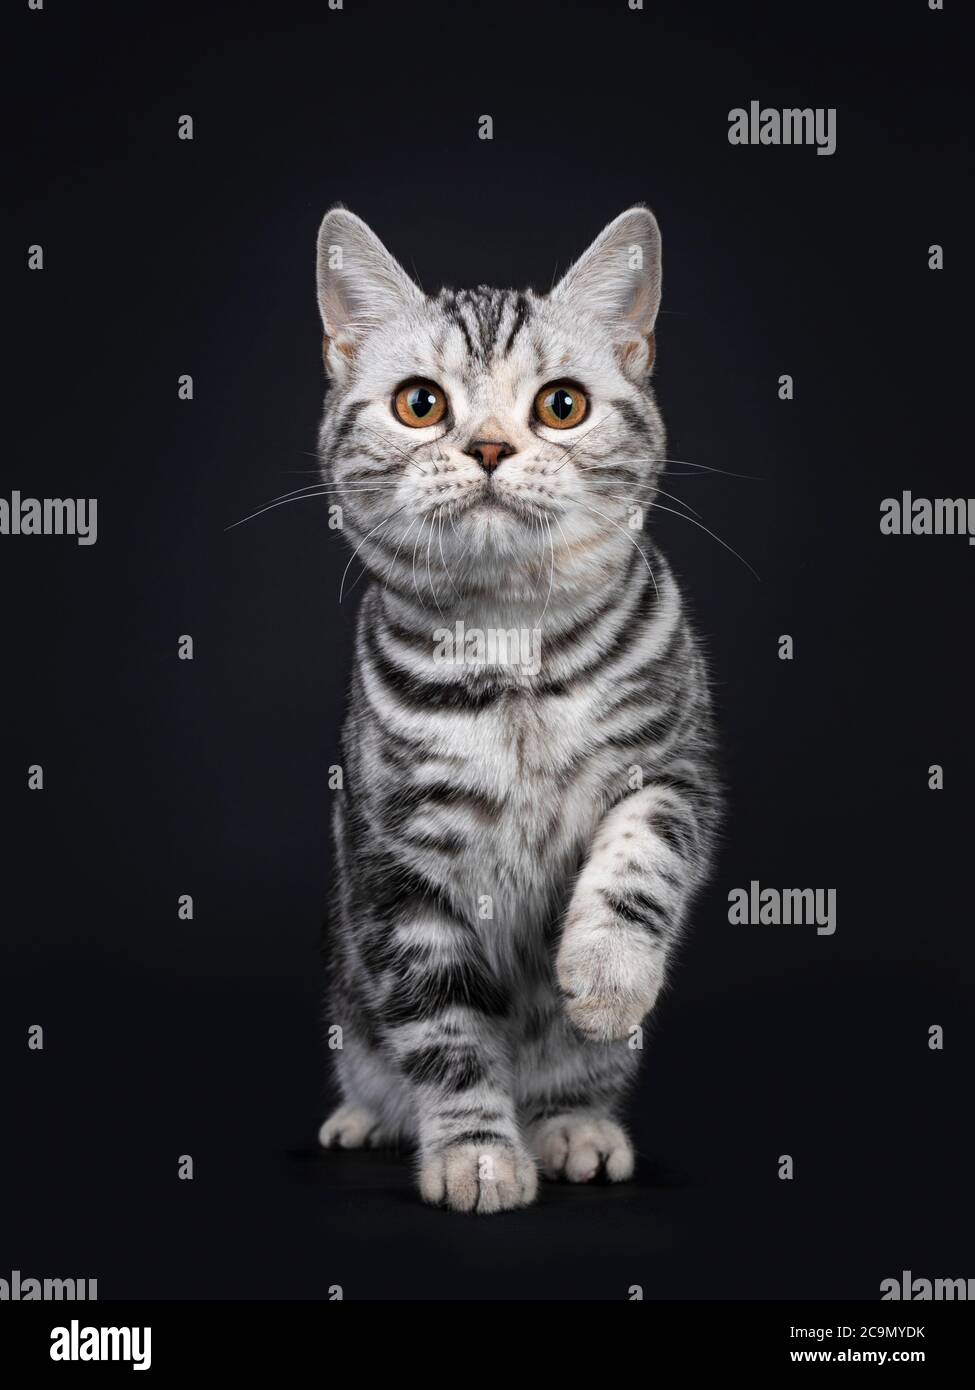 Carino gattino di gatto americano Shorthair, in piedi di fronte. Guardando la fotocamera con gli occhi arancioni, una zampa giocosa in aria. Isolato su nero Foto Stock